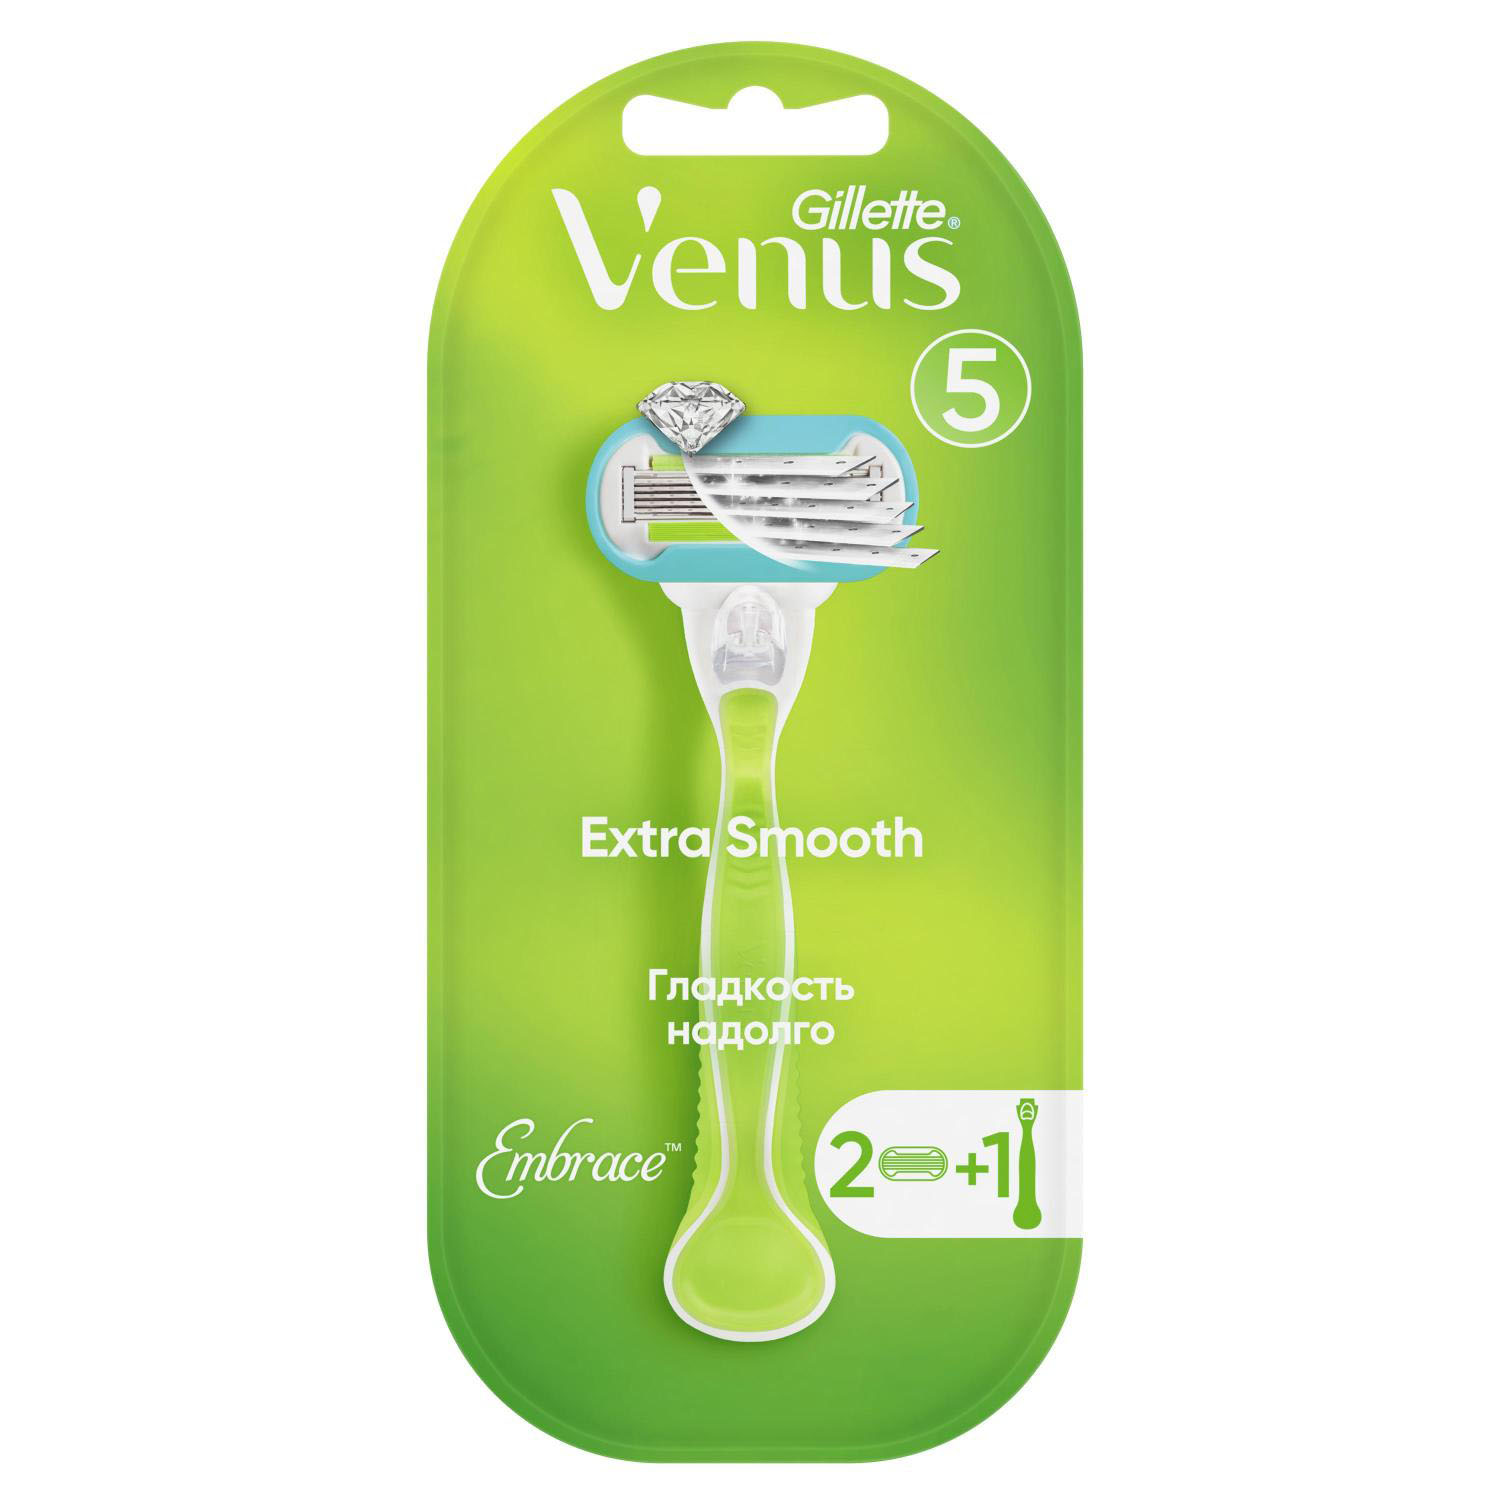 Жиллетт станок для бритья Венус Эмбрейс +2кассеты gillette венус снеп эмбрейс станок бритвенный с 1 кассетой